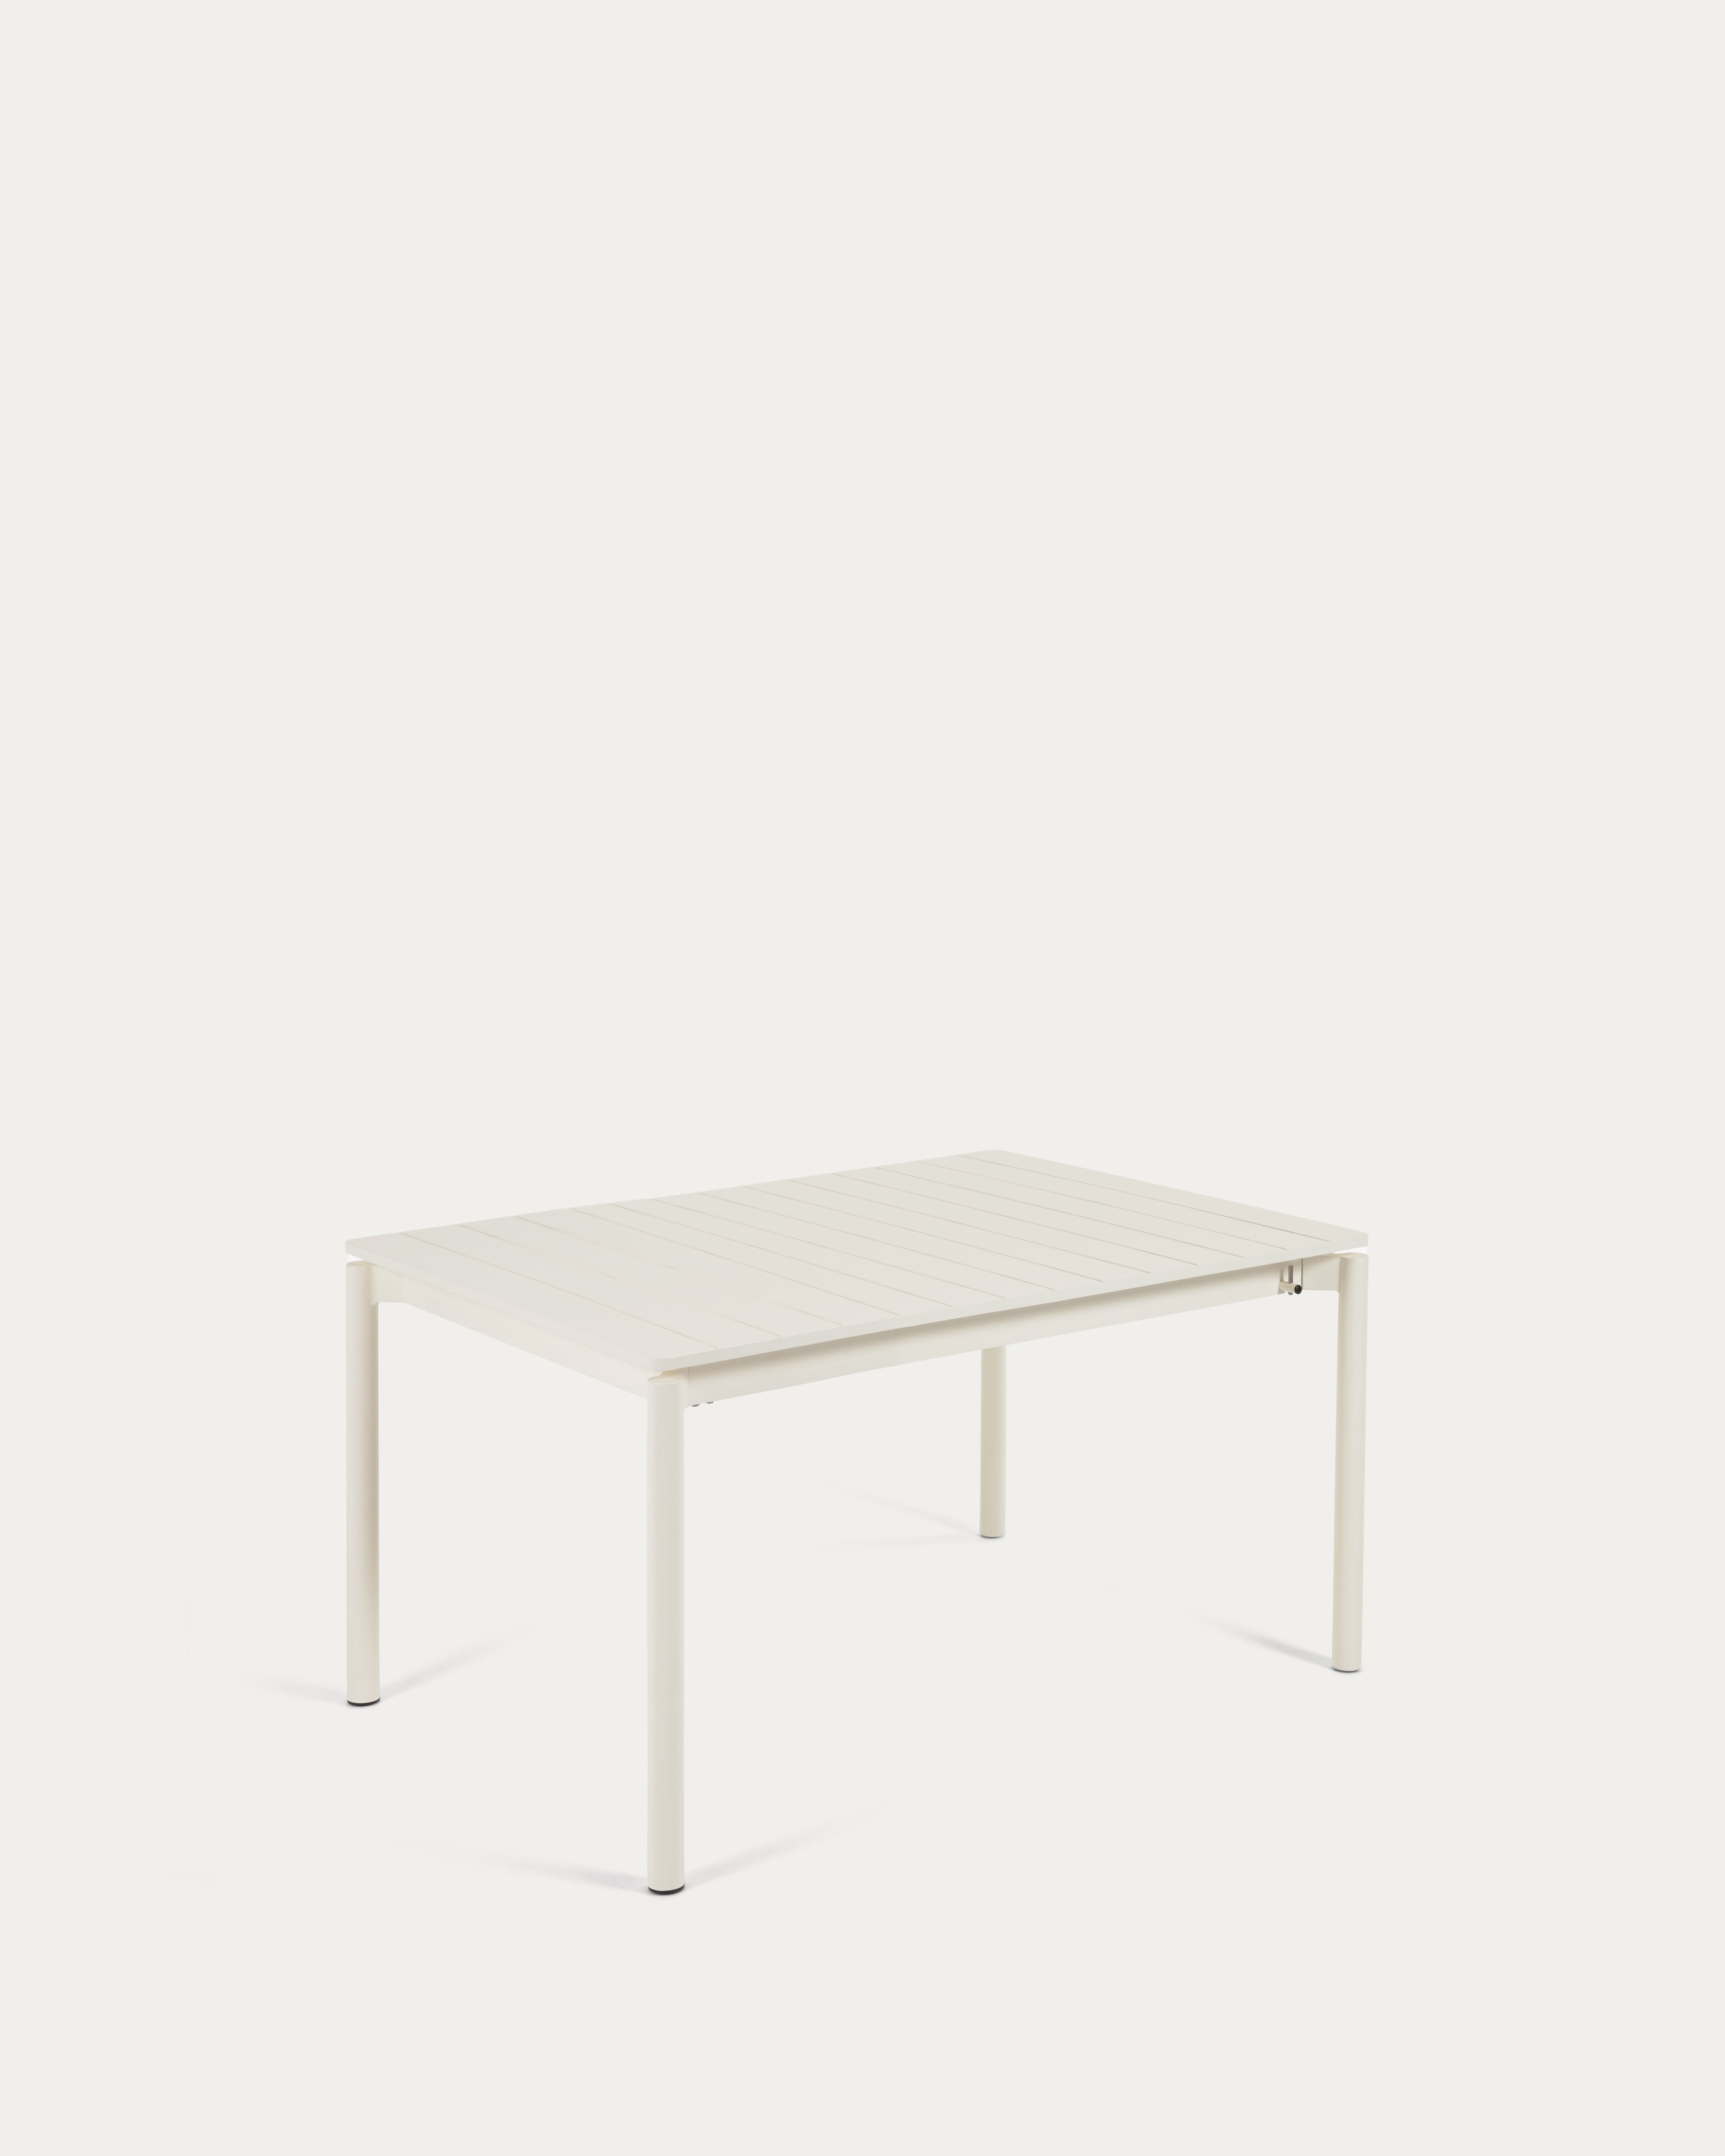 Zaltana kihúzható kültéri asztal alumíniumból nyers befejezéssel, 140 (200) x 100 cm